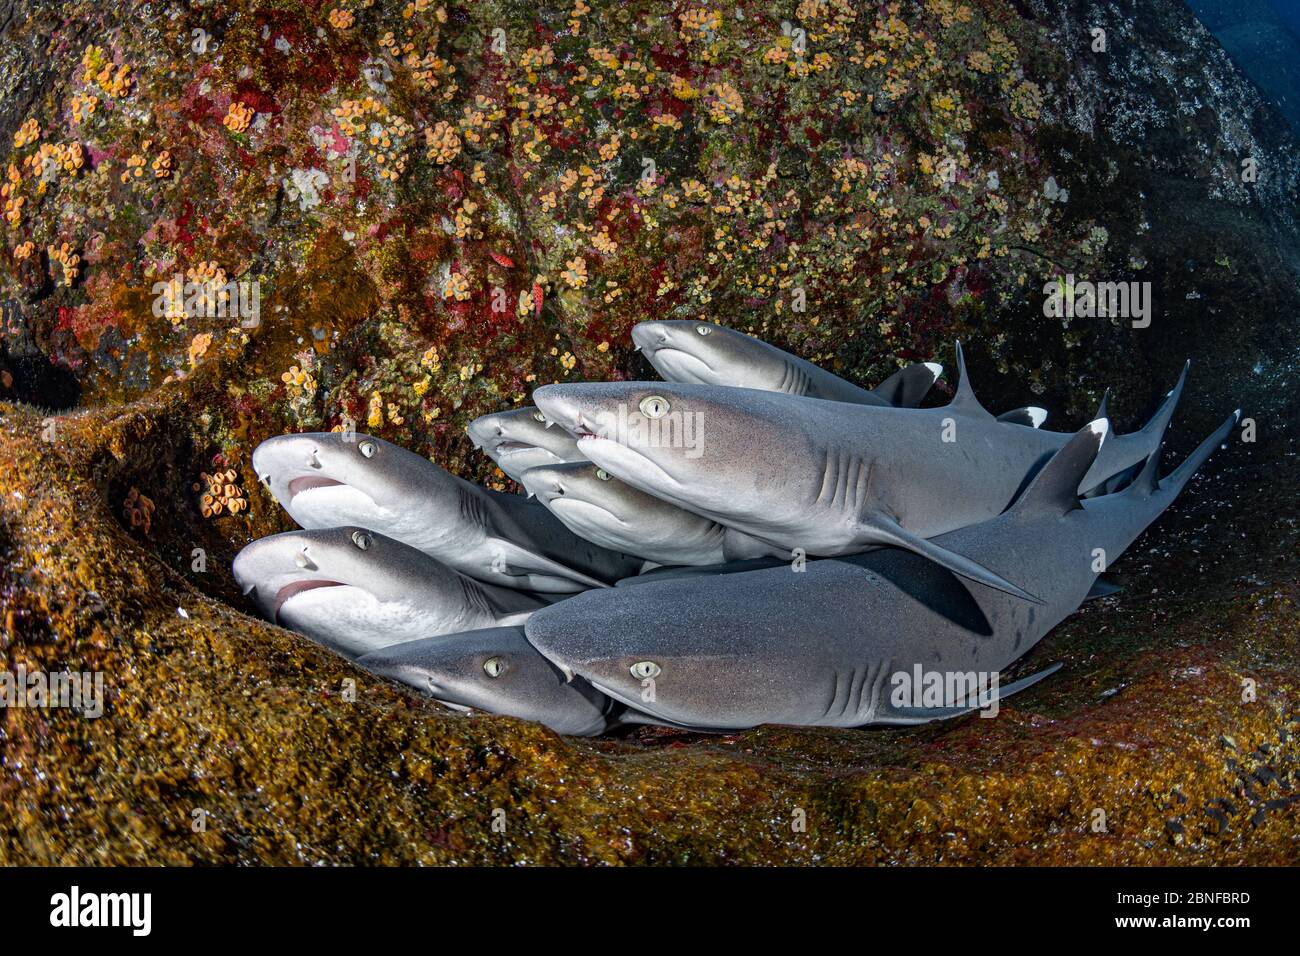 Requins de récif à pointe blanche reposant sur une roche Banque D'Images